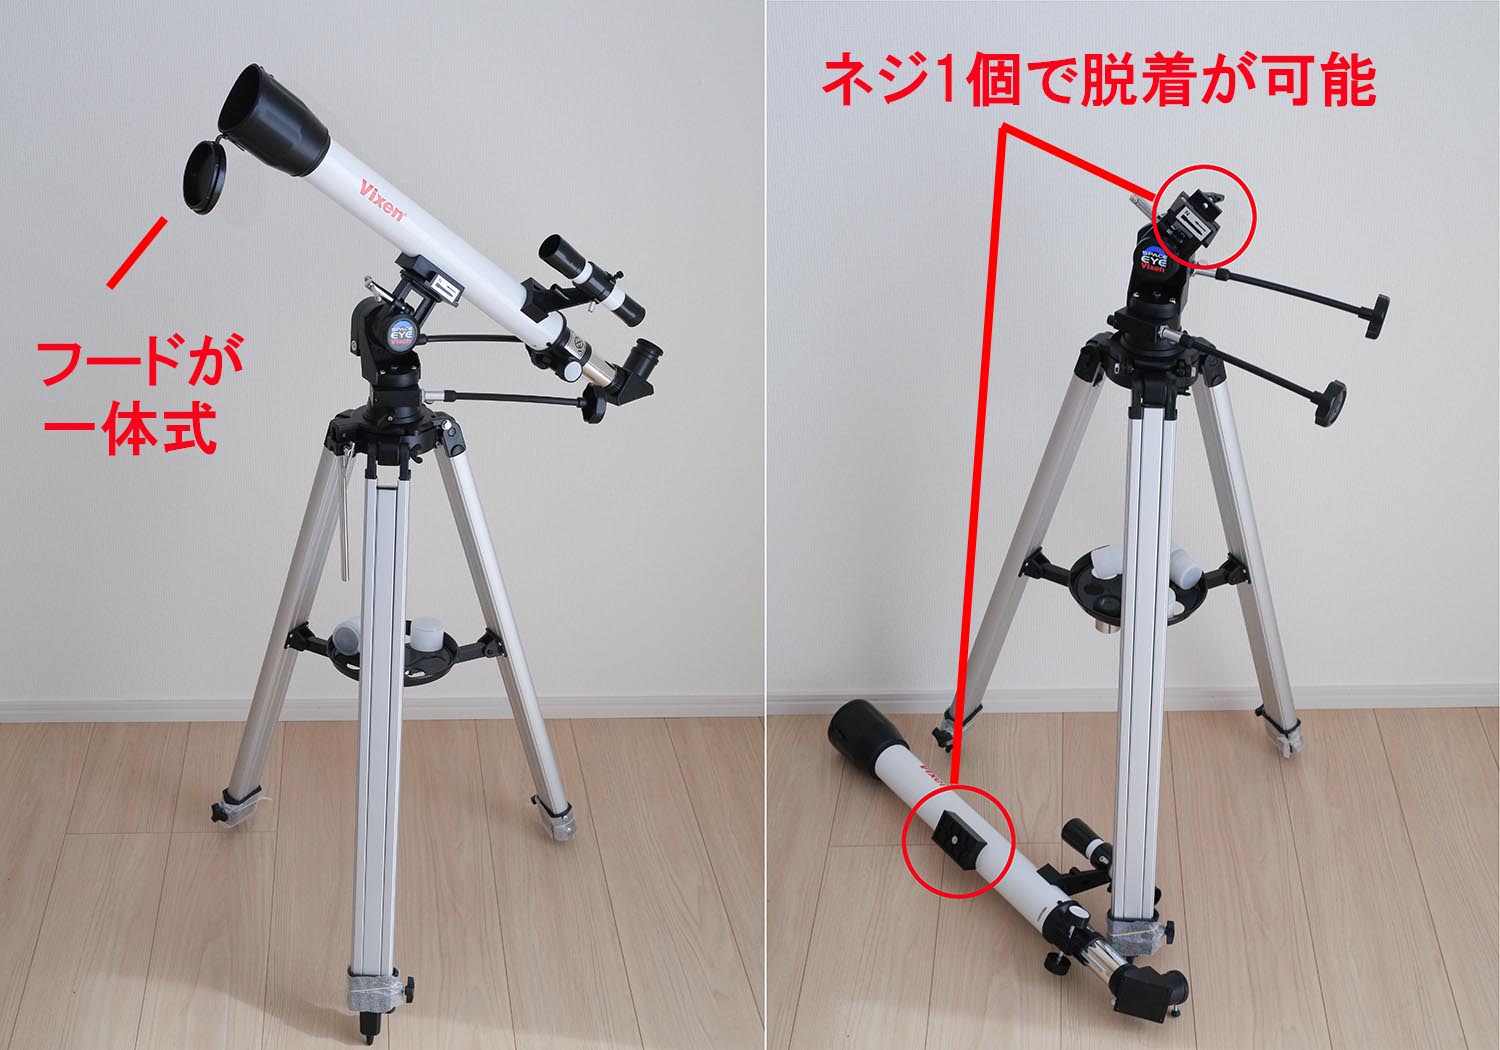 天体望遠鏡はココを見て選べ！連載(3)【1万円で買える天体望遠鏡